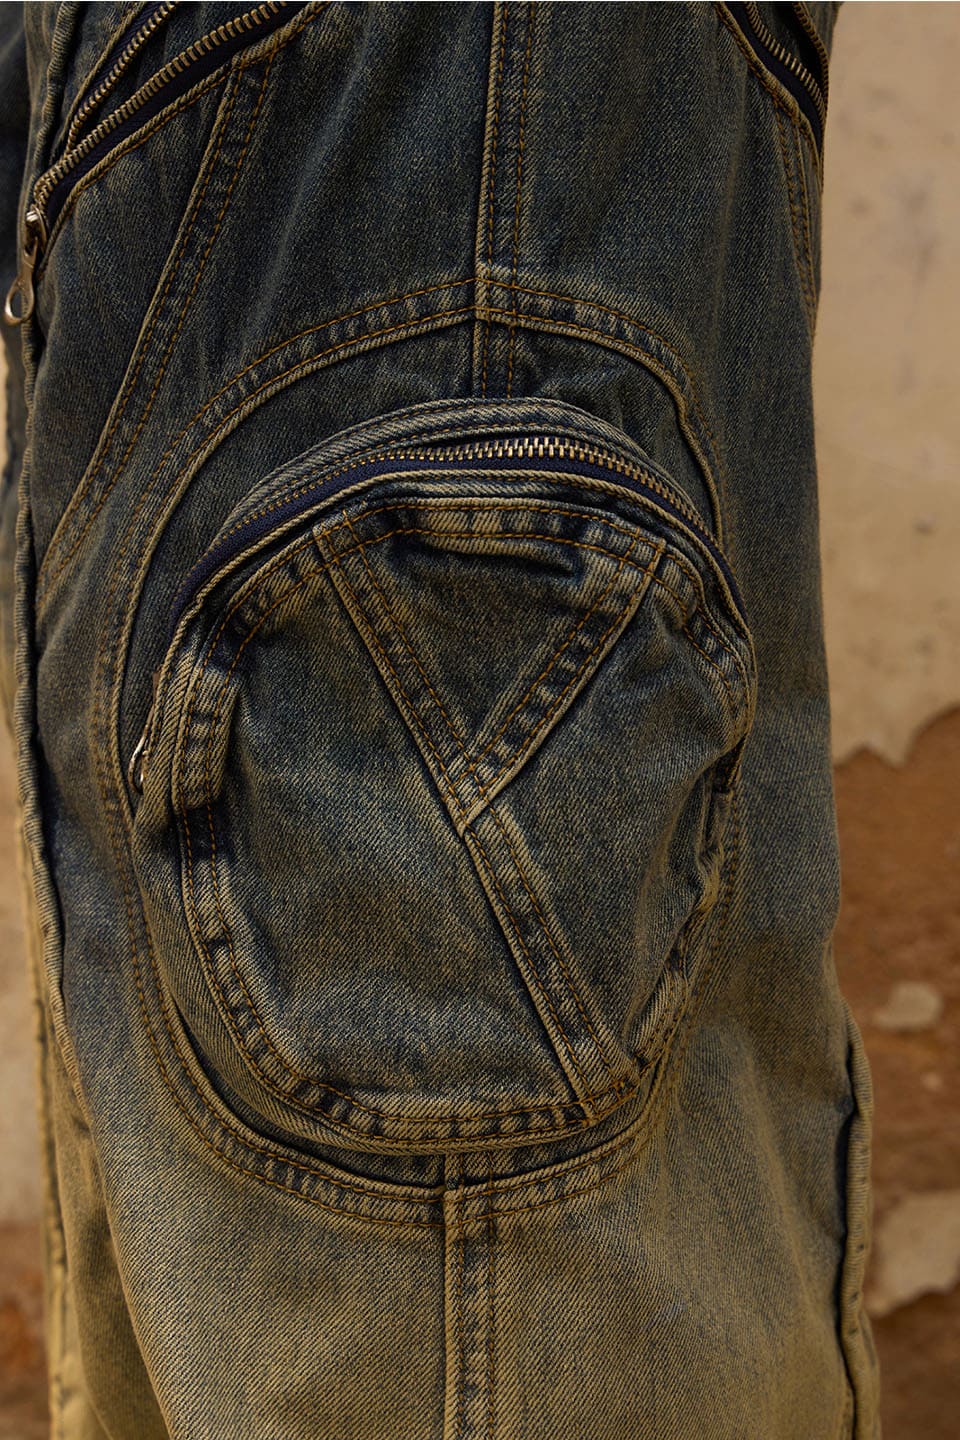 Washing Gradient Denim Jeans